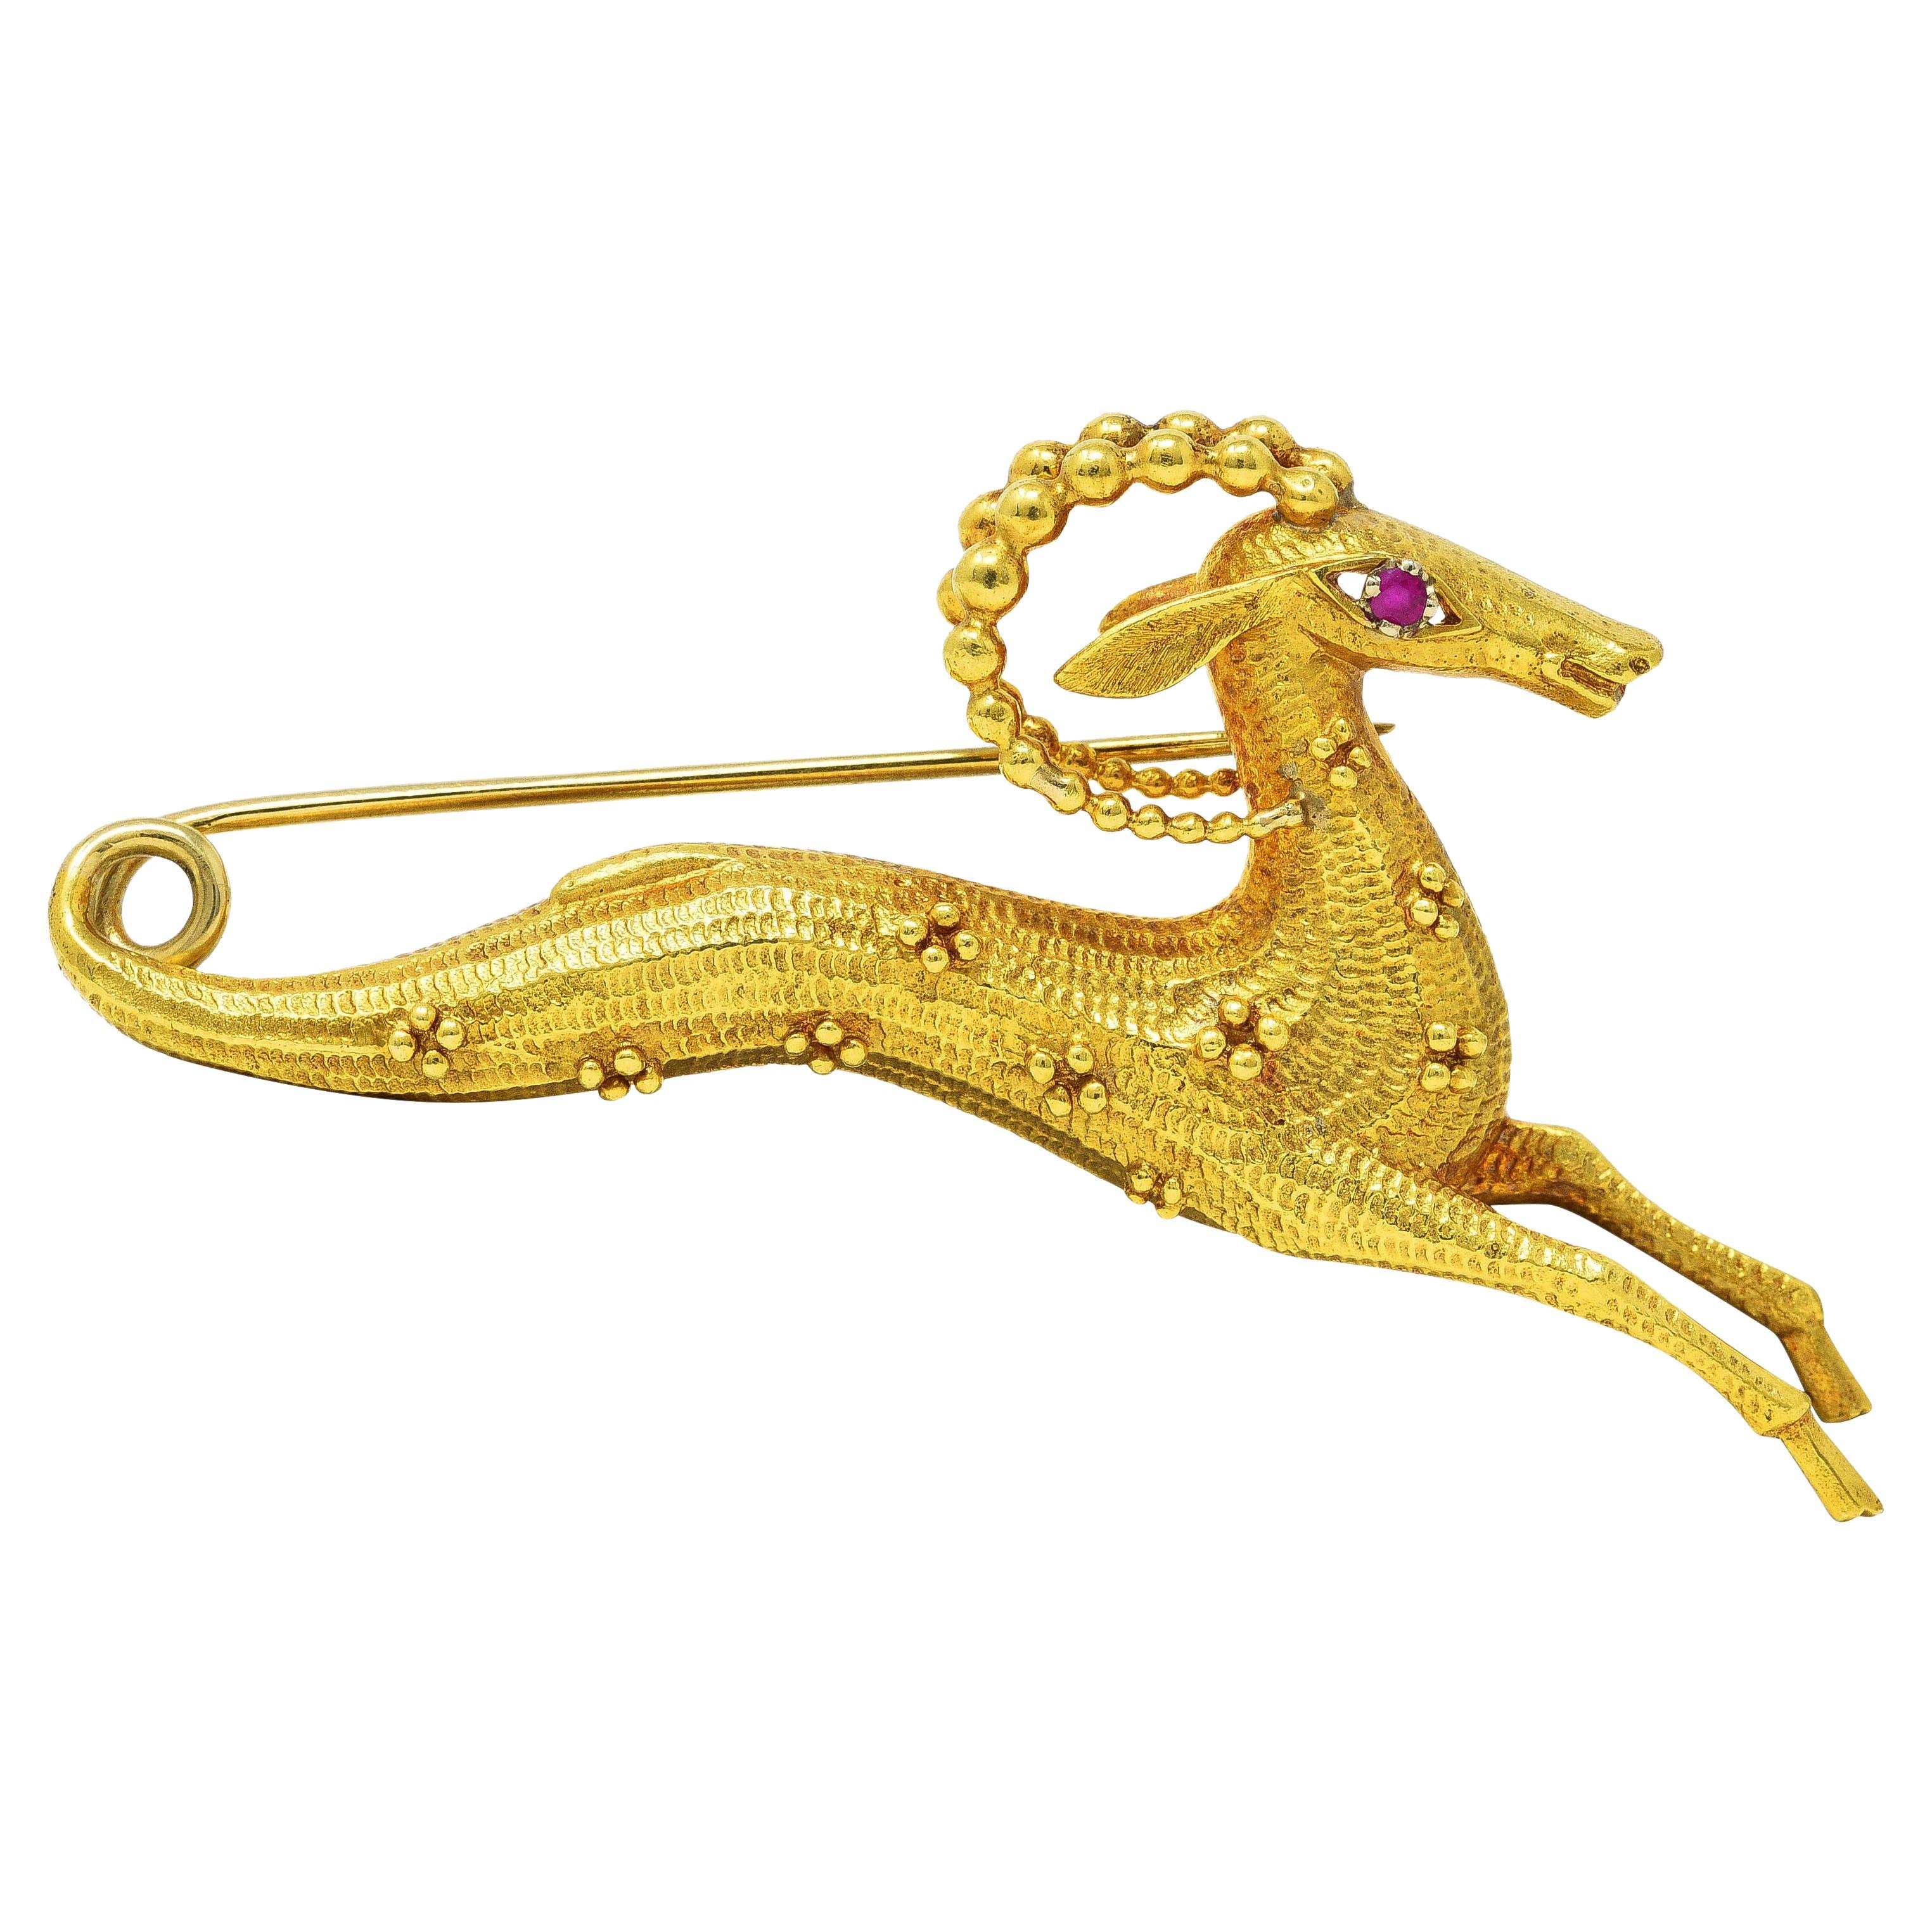 Cartier Rubin 18 Karat Gelbgold Whimsical Gazelle Vintage Brosche